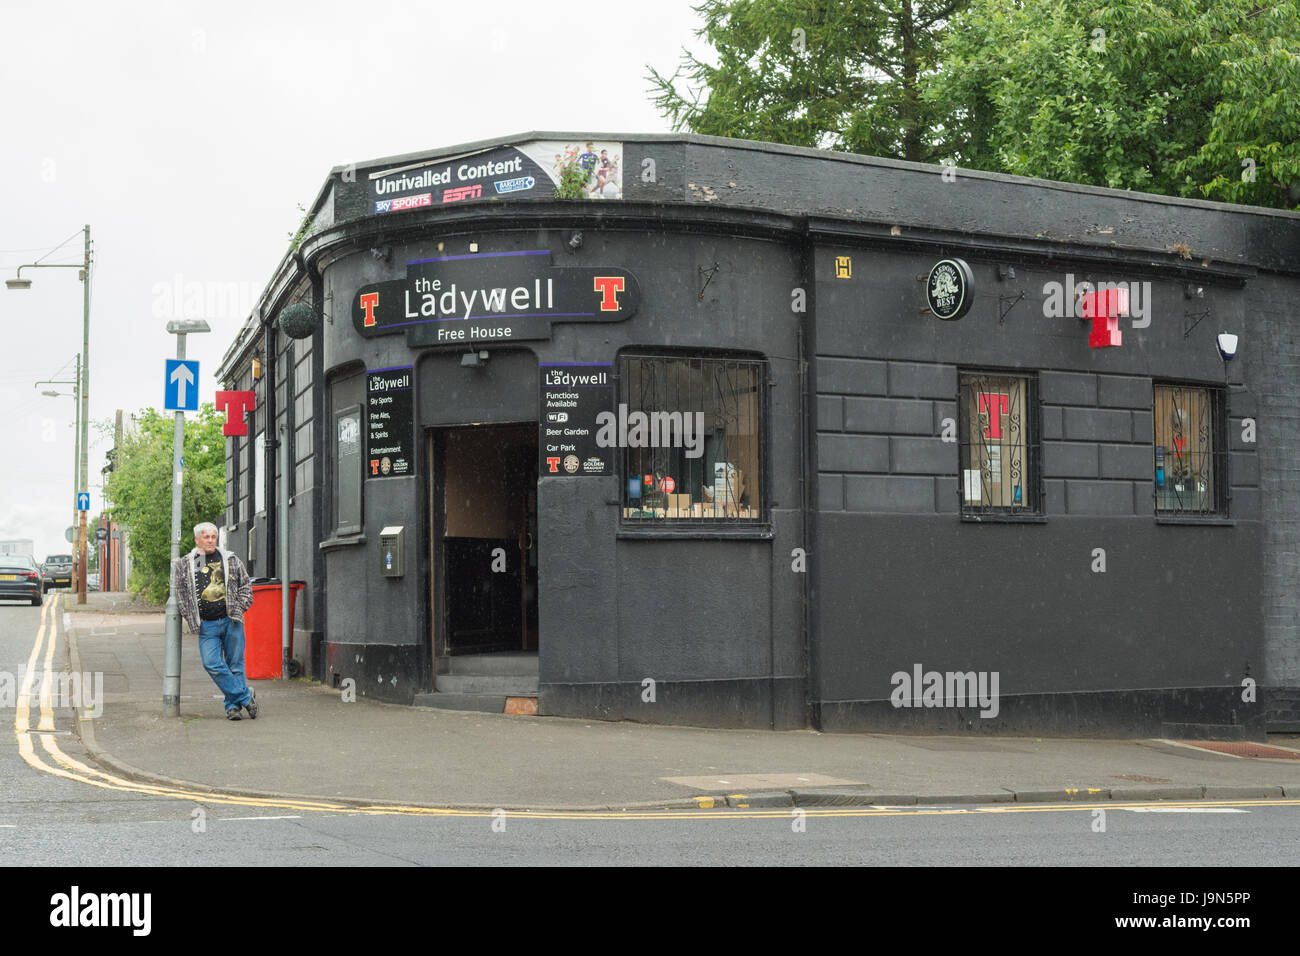 Pub de Glasgow - la maison en face de Ladywell Tennents Brewery, Glasgow, Écosse, Royaume-Uni Banque D'Images